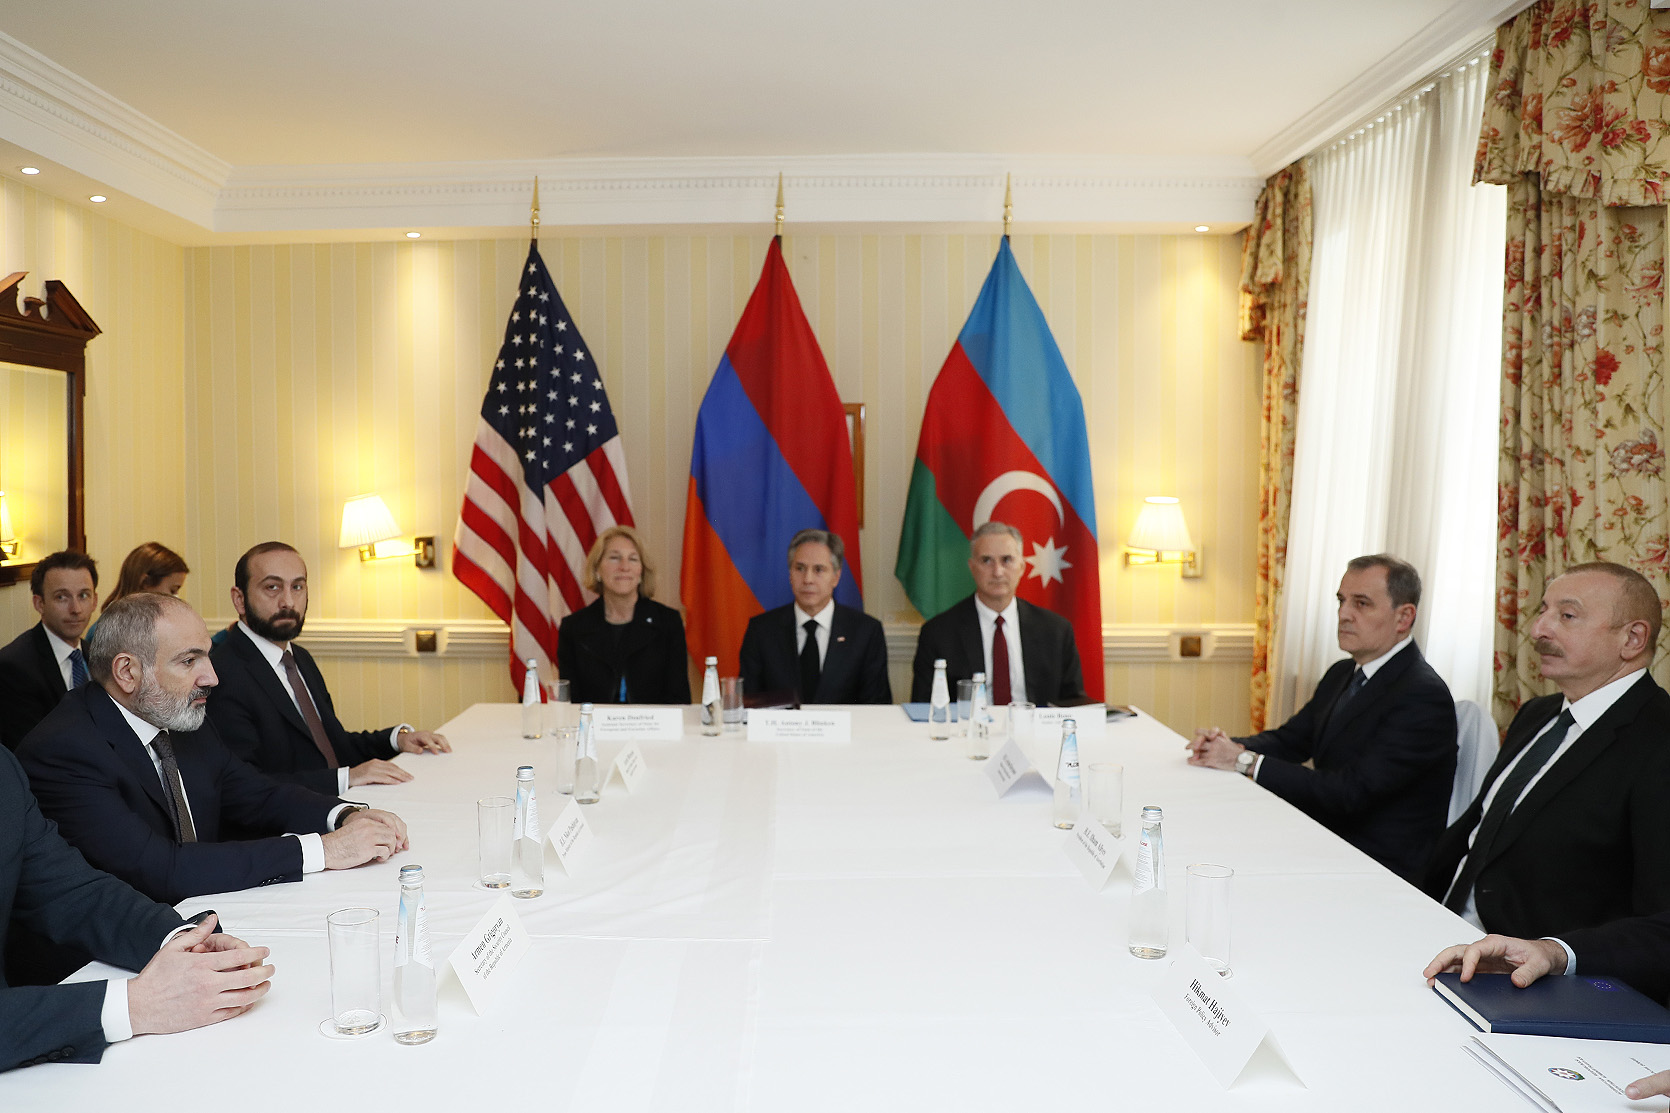 Մյունխենում տեղի է ունեցել ՀՀ վարչապետի, ԱՄՆ պետքարտուղարի և Ադրբեջանի նախագահի հանդիպումը